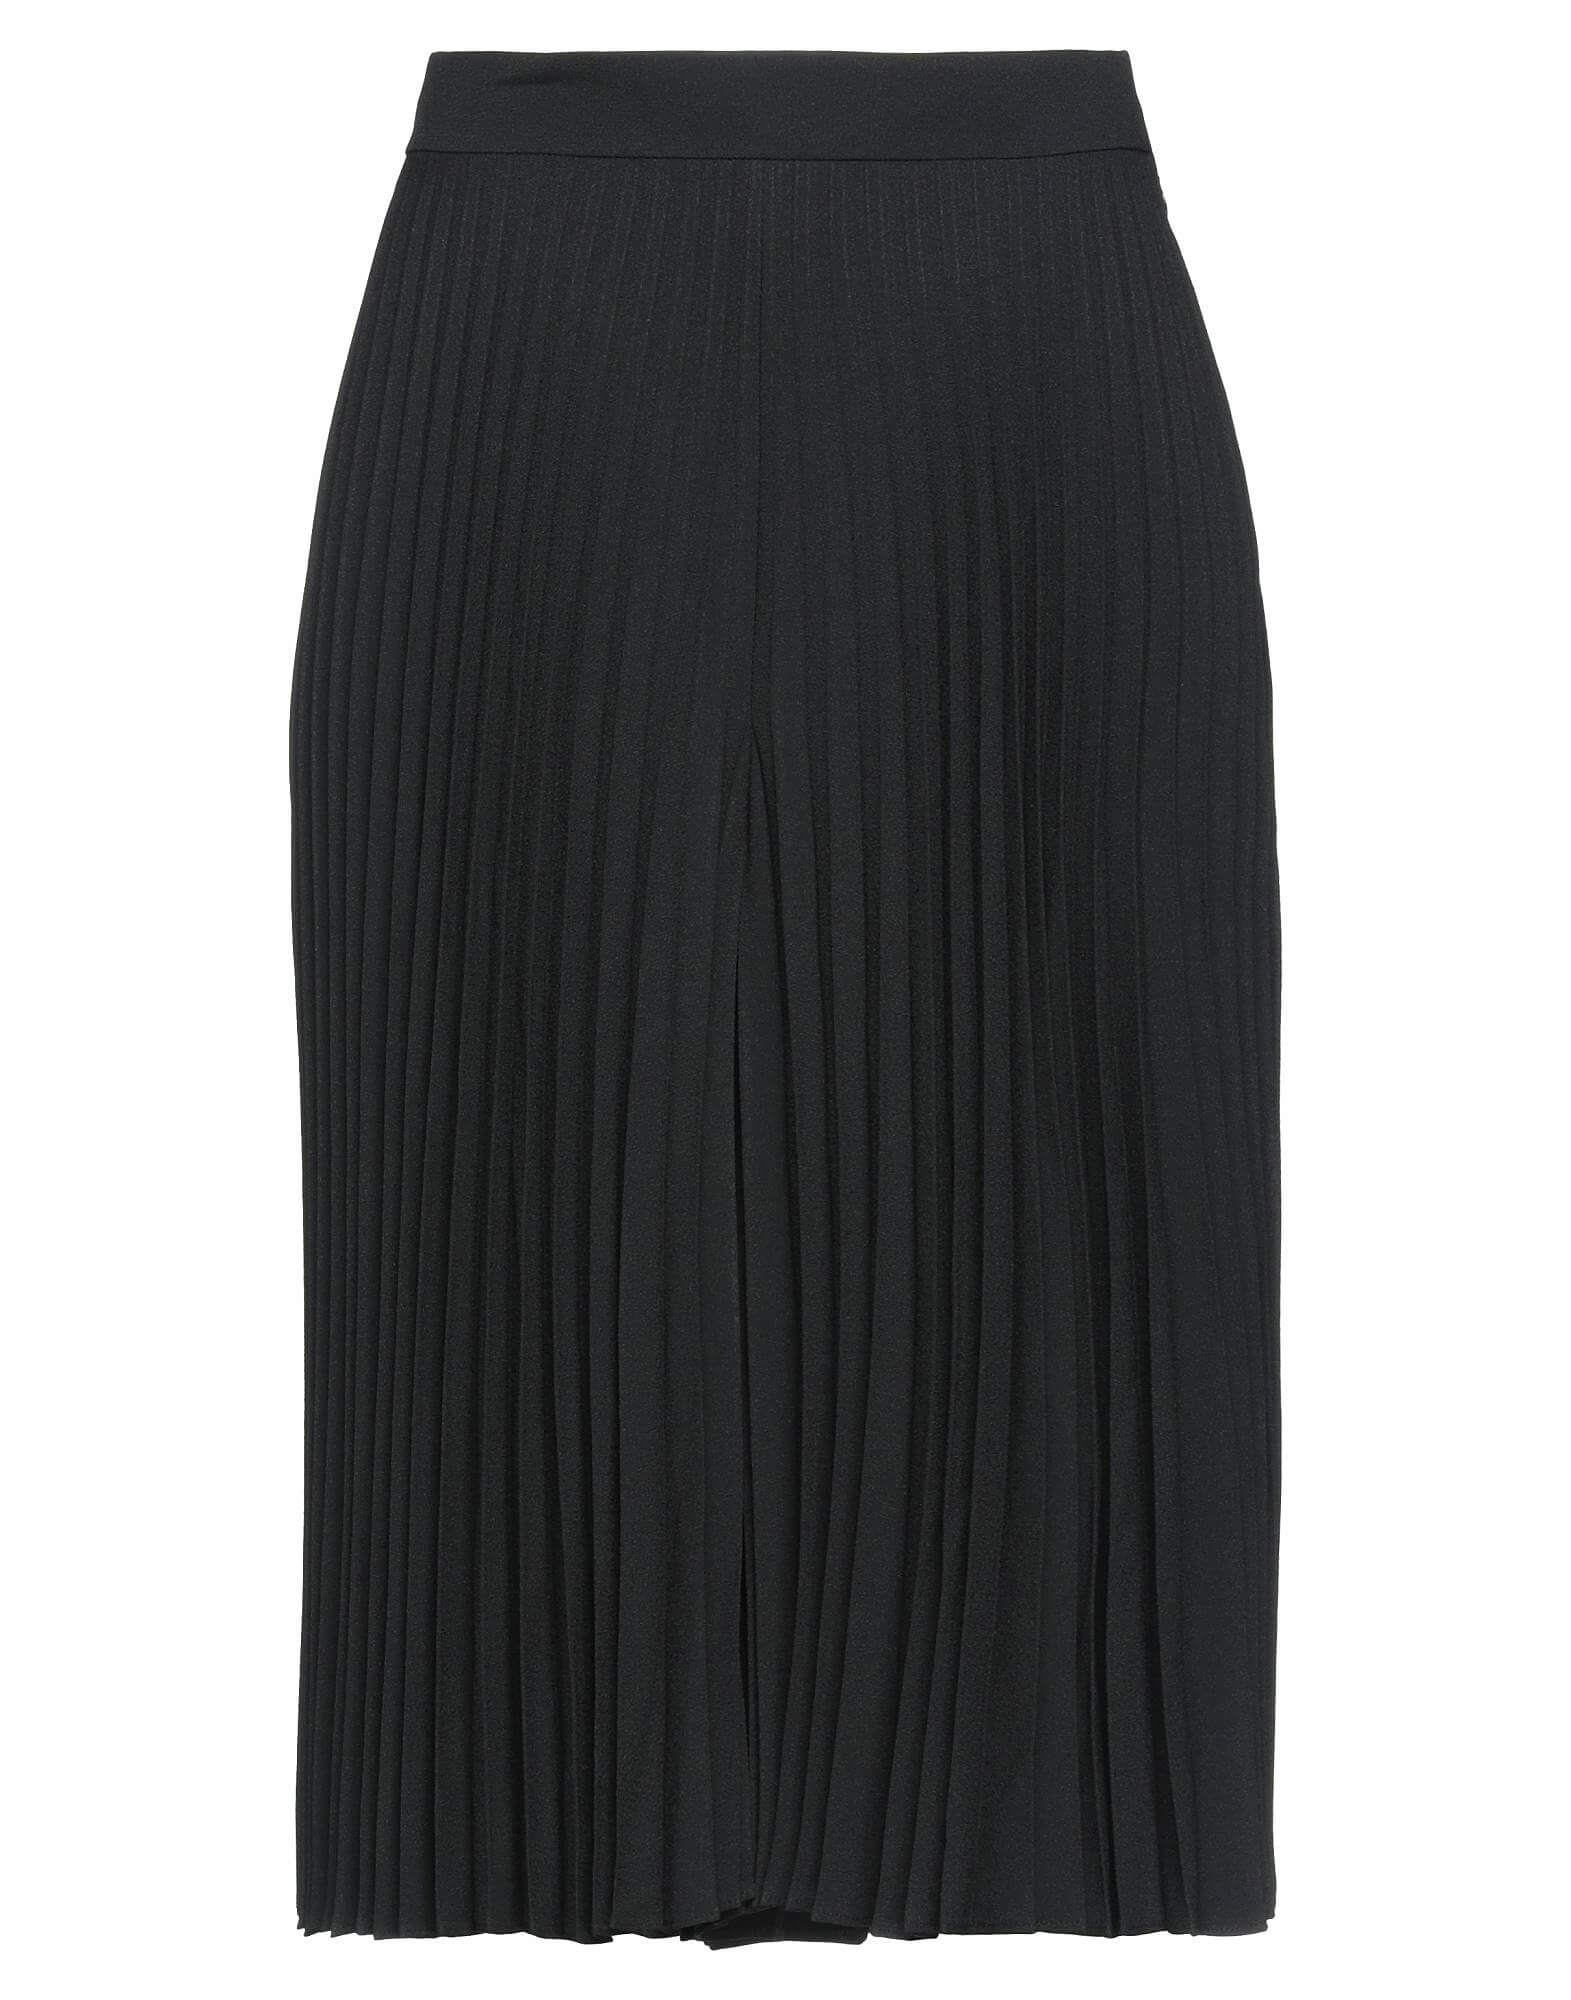 Плиссированная юбка-шорты CELINE, черный женская длинная юбка трапеция плиссированная сетчатая юбка выше колена весна лето 2022